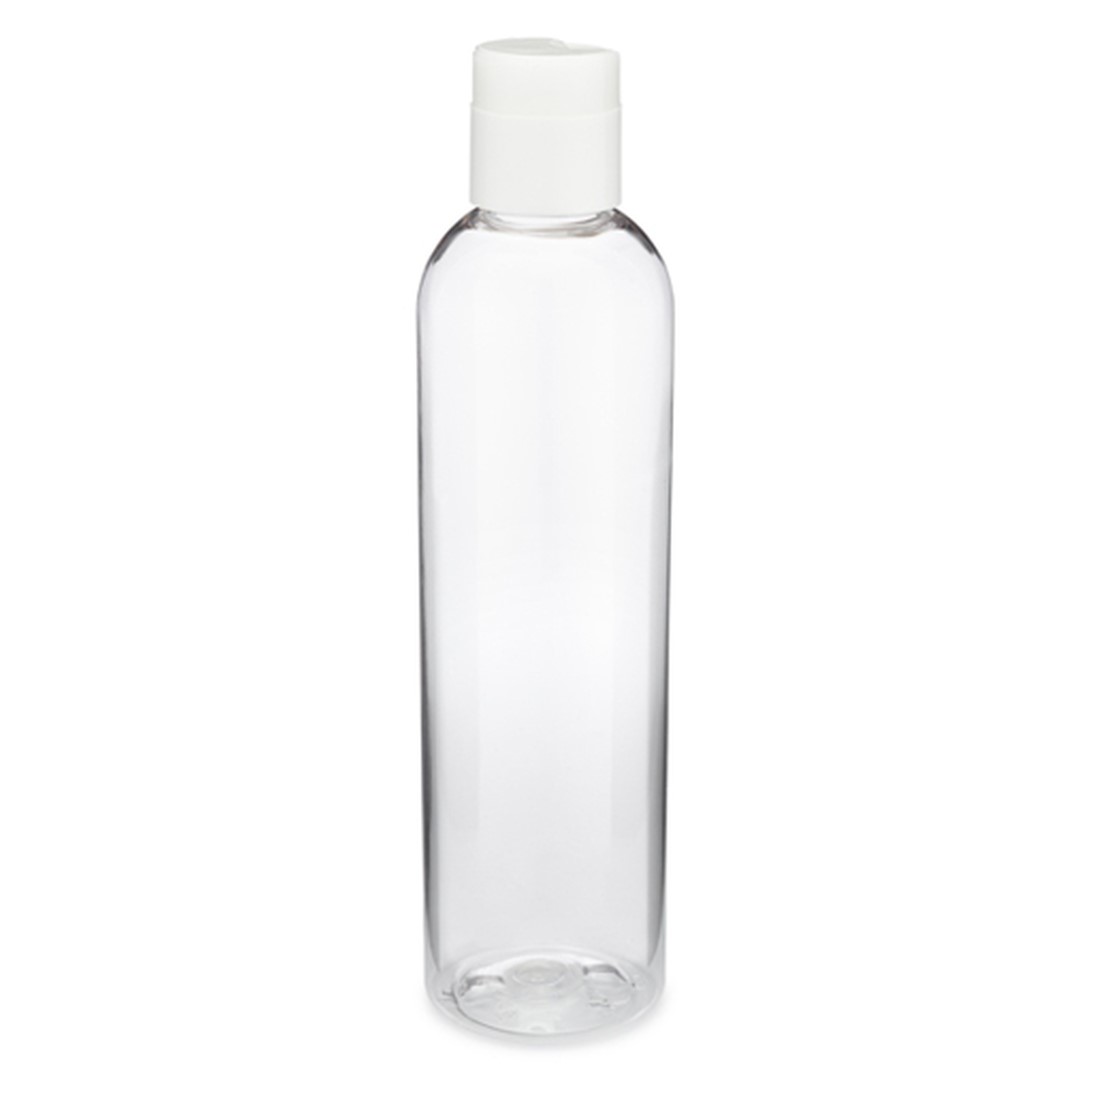 8 oz Clear PET Plastic Bullet Bottle